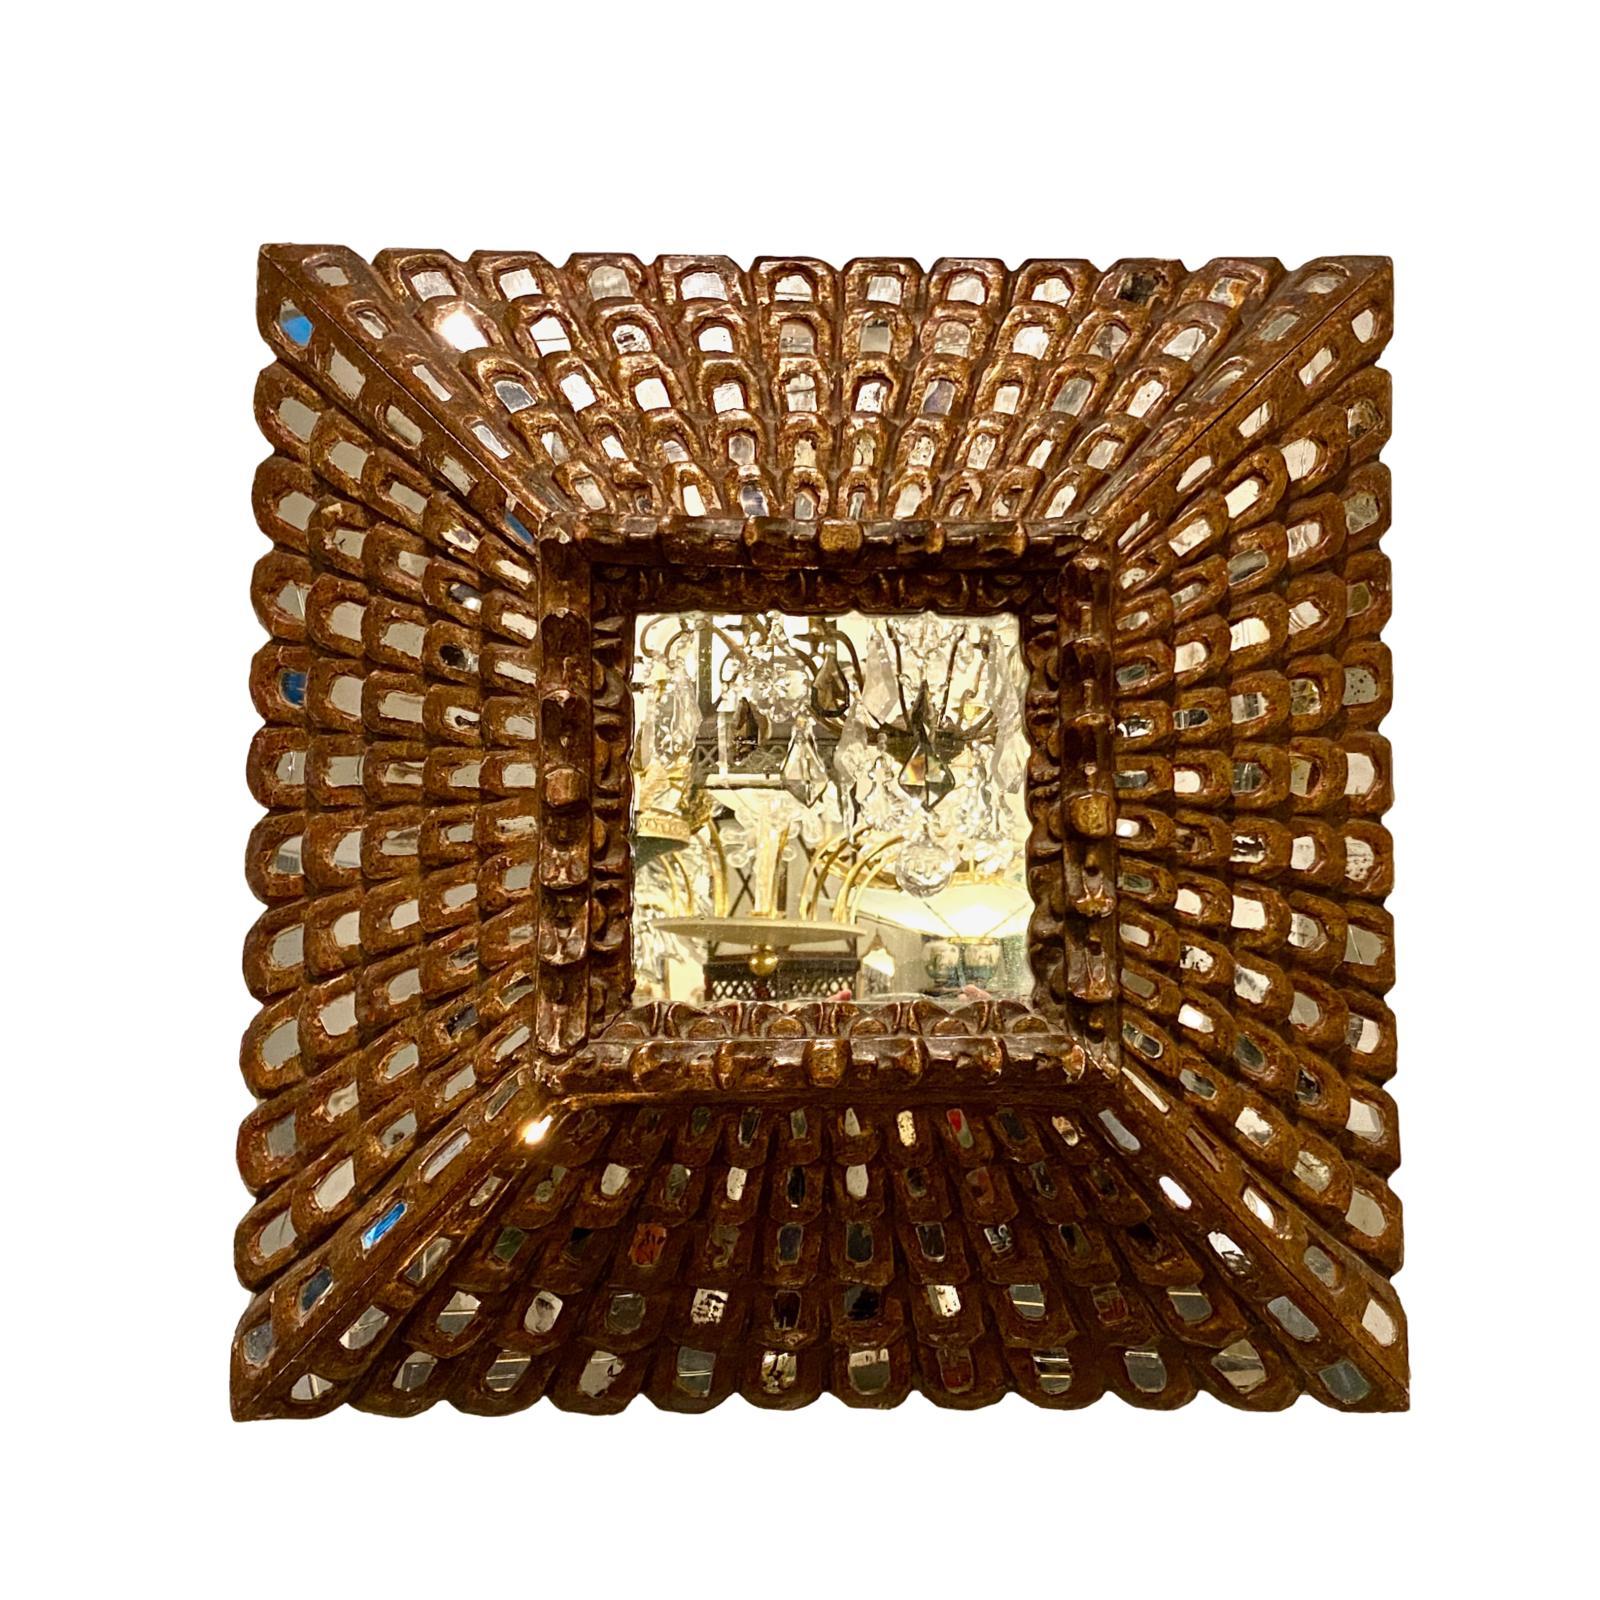 Ein vergoldeter Holzspiegel im spanischen Kolonialstil aus den 1920er Jahren mit Spiegeleinsätzen im Rahmen.

Abmessungen:
Höhe 24